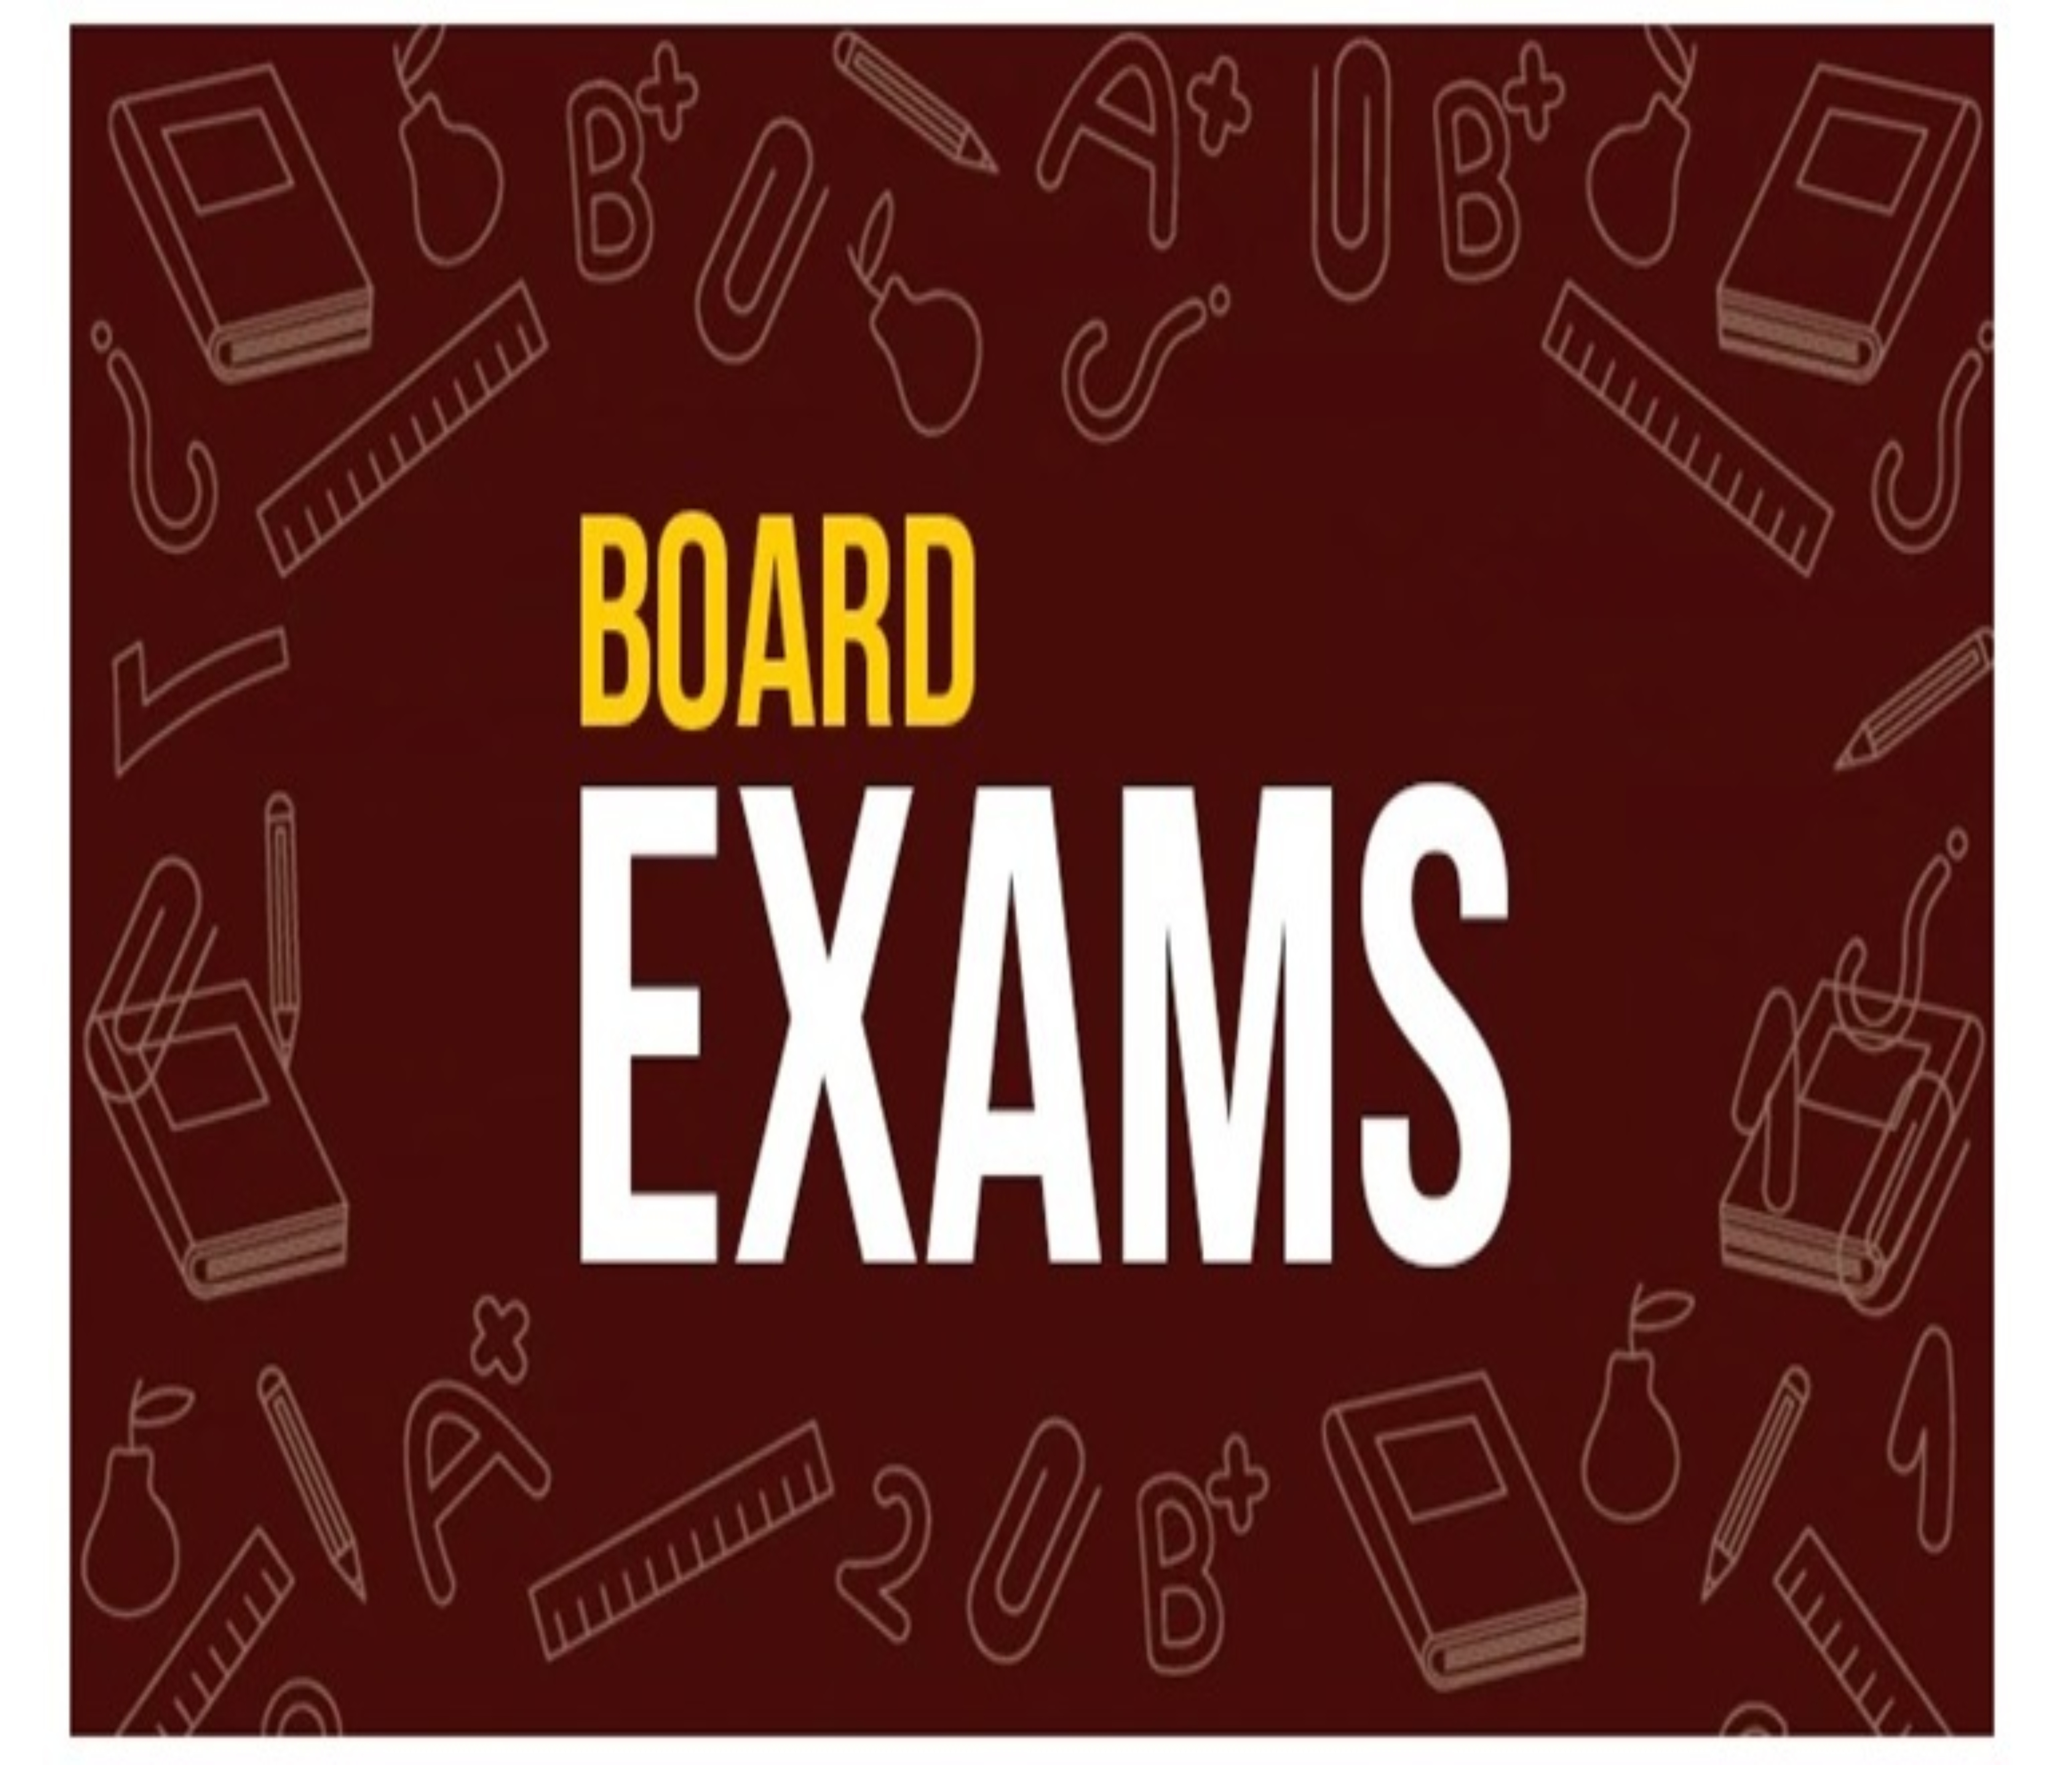 Board exams 2021: इन राज्यों में इस तारीख़ से हैं बोर्ड परिक्षाएं